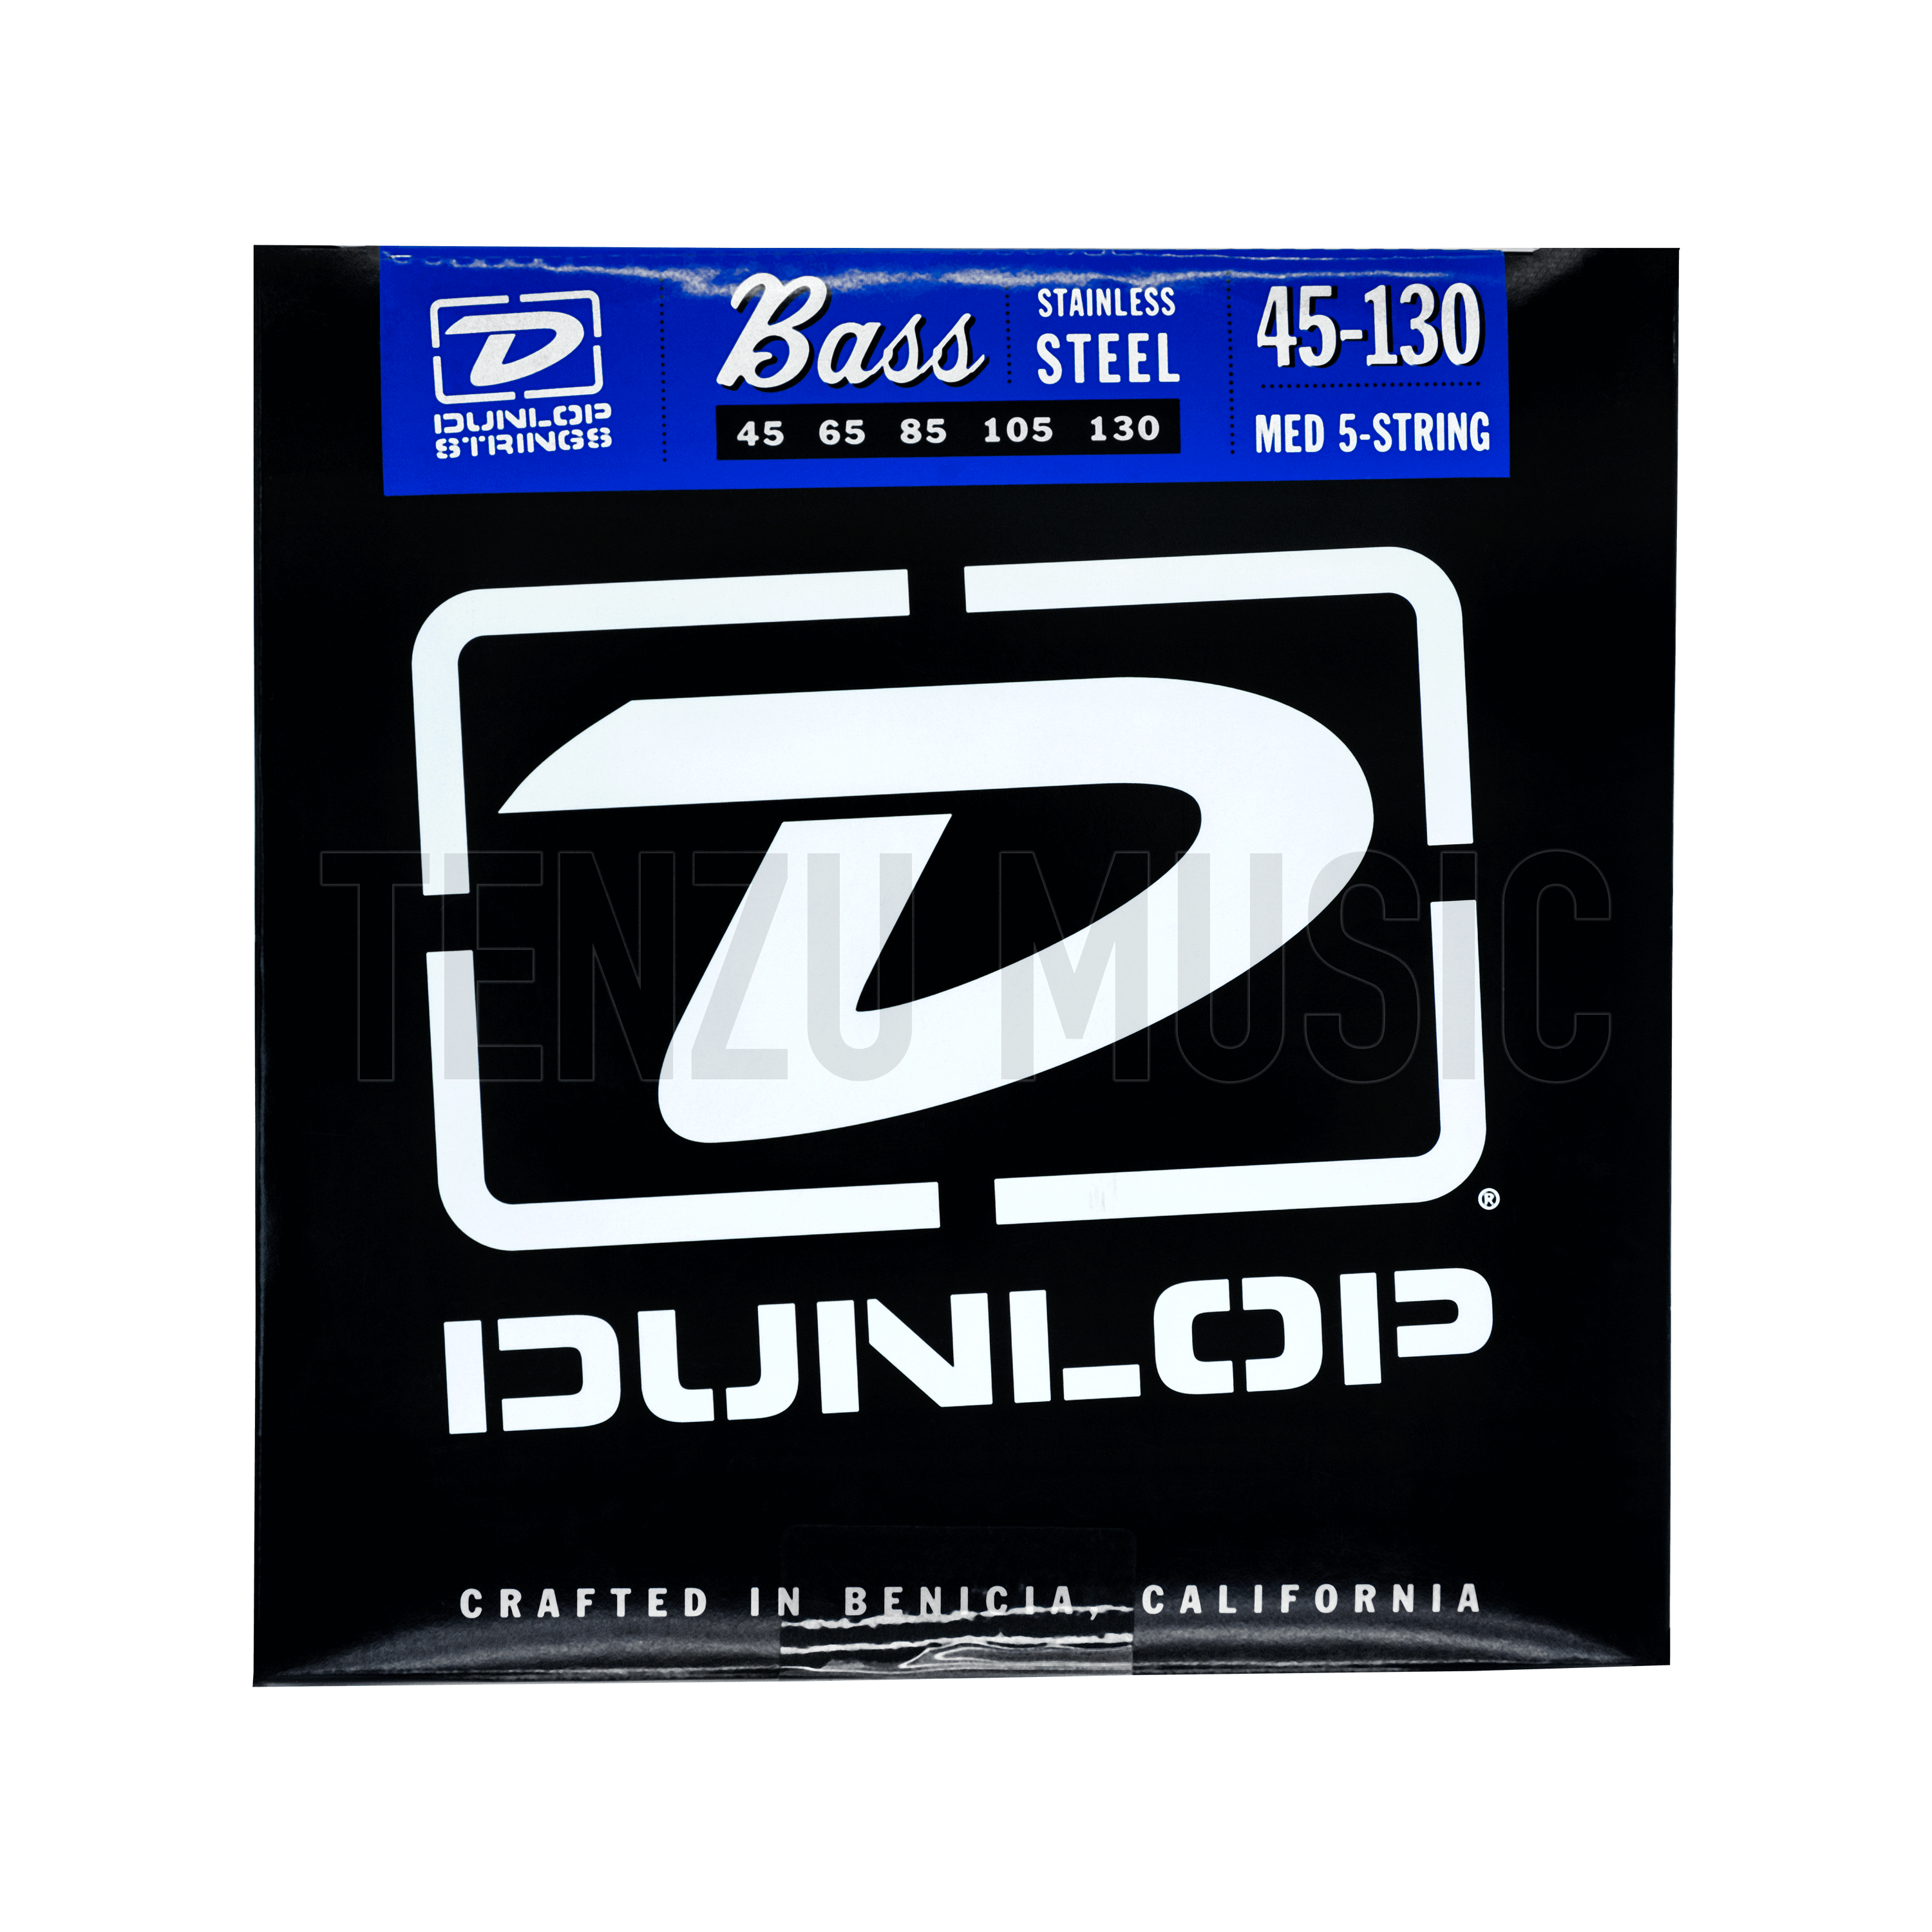 سیم گیتار Dunlop Stainless steel 45-130 MED 5-String